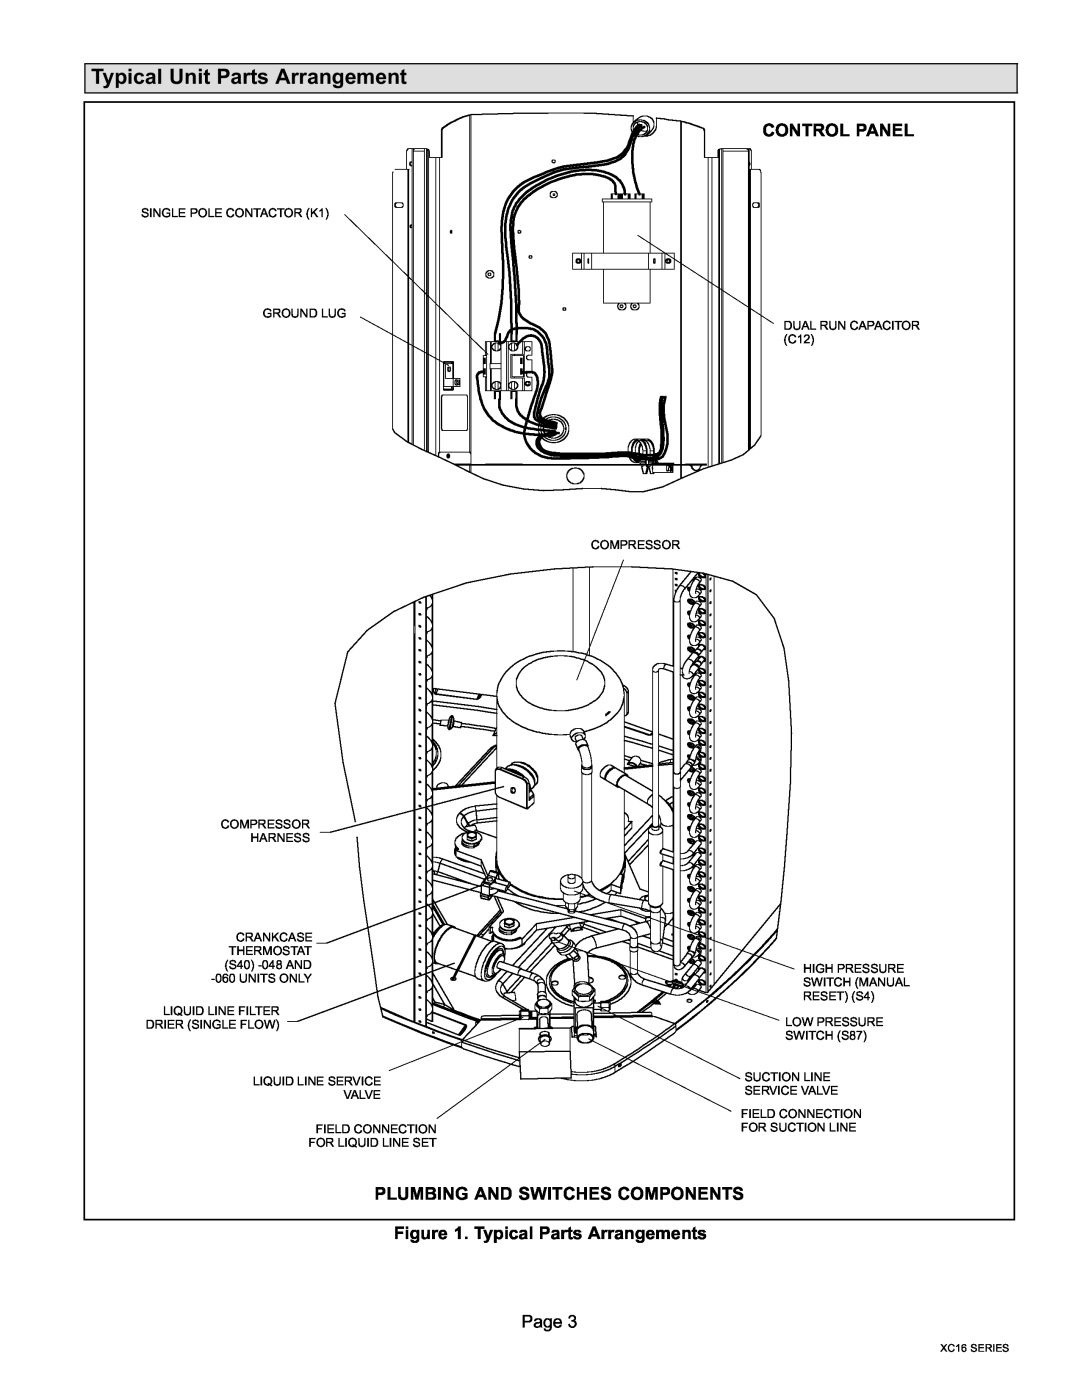 Lenox Elite Series X16 Air Conditioner Units Typical Unit Parts Arrangement, Control Panel, Typical Parts Arrangements 